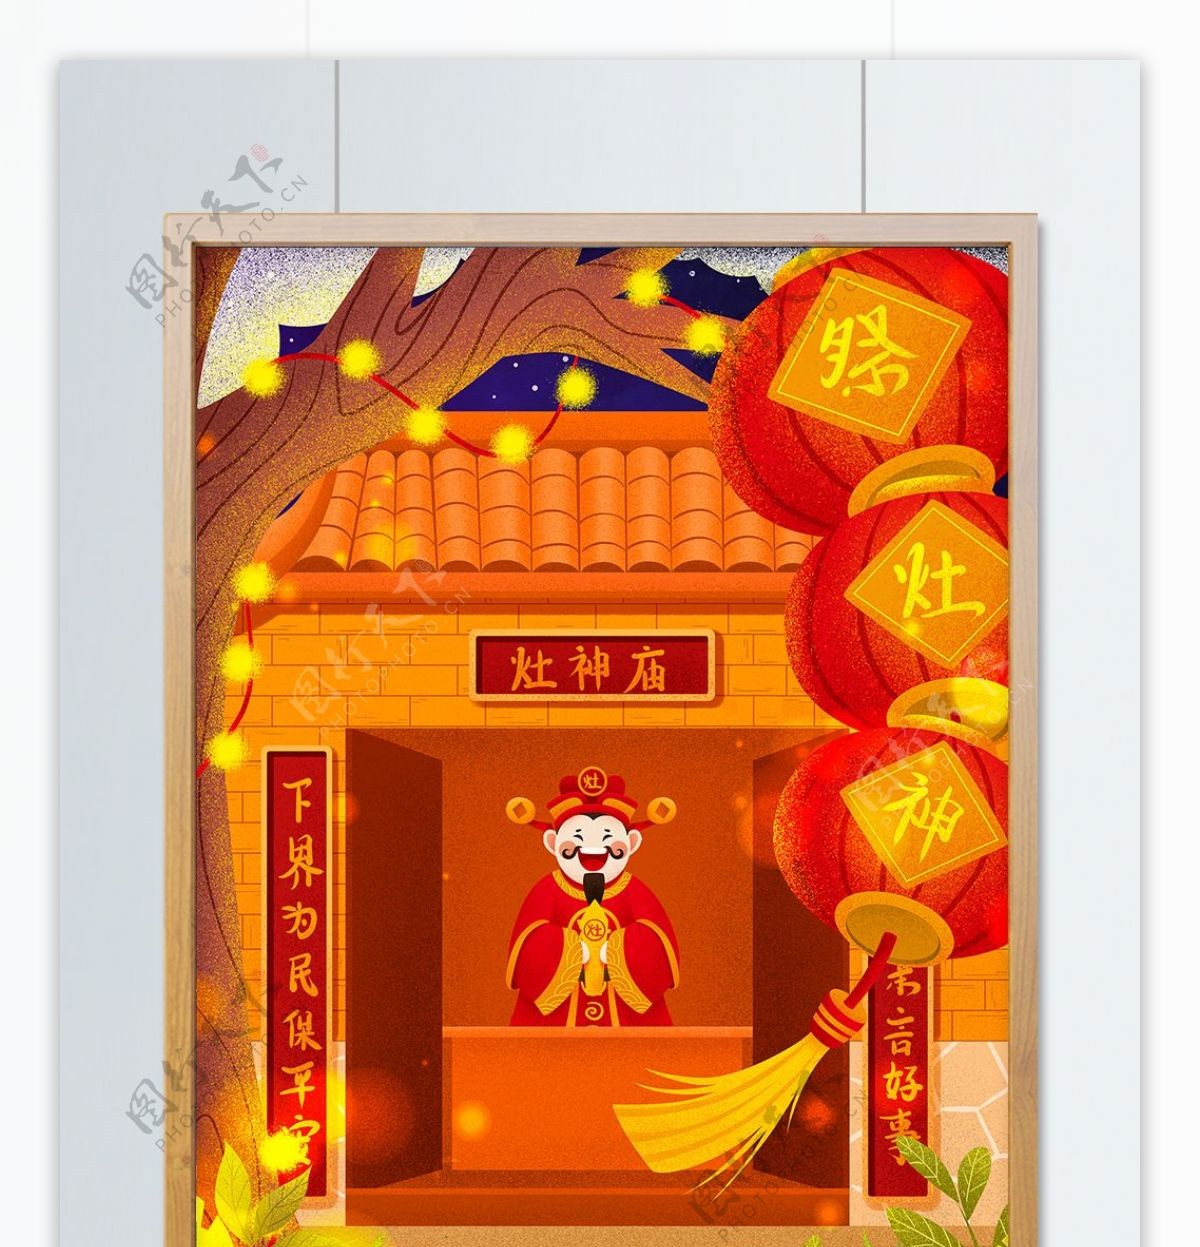 传统节日腊月二十三祭灶神灶王庙插画